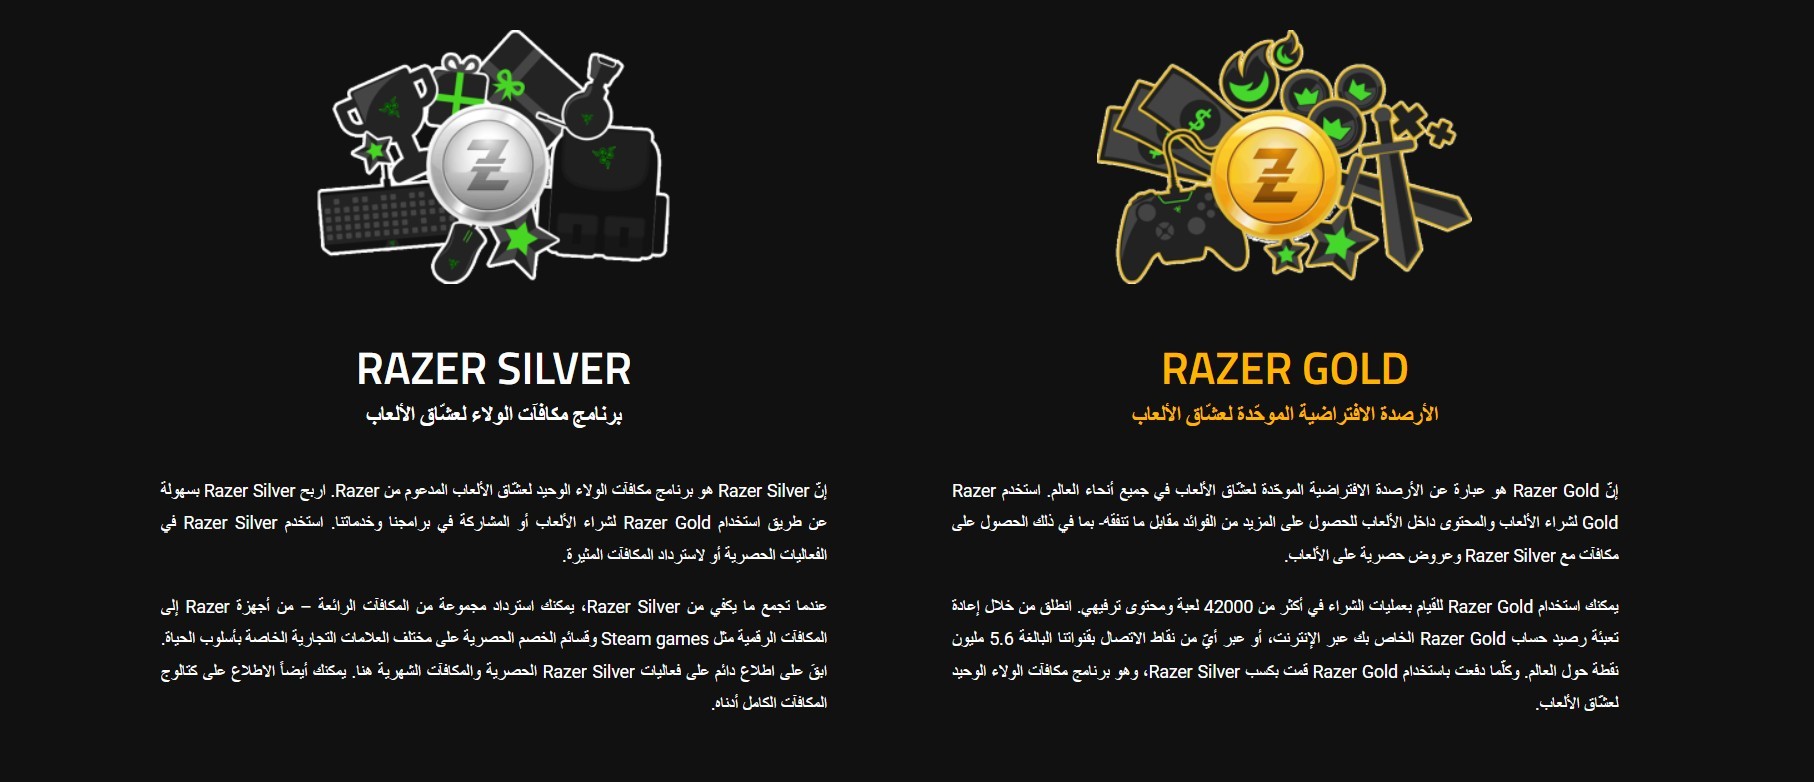 خدمة Razer Gold - ريزر جولد